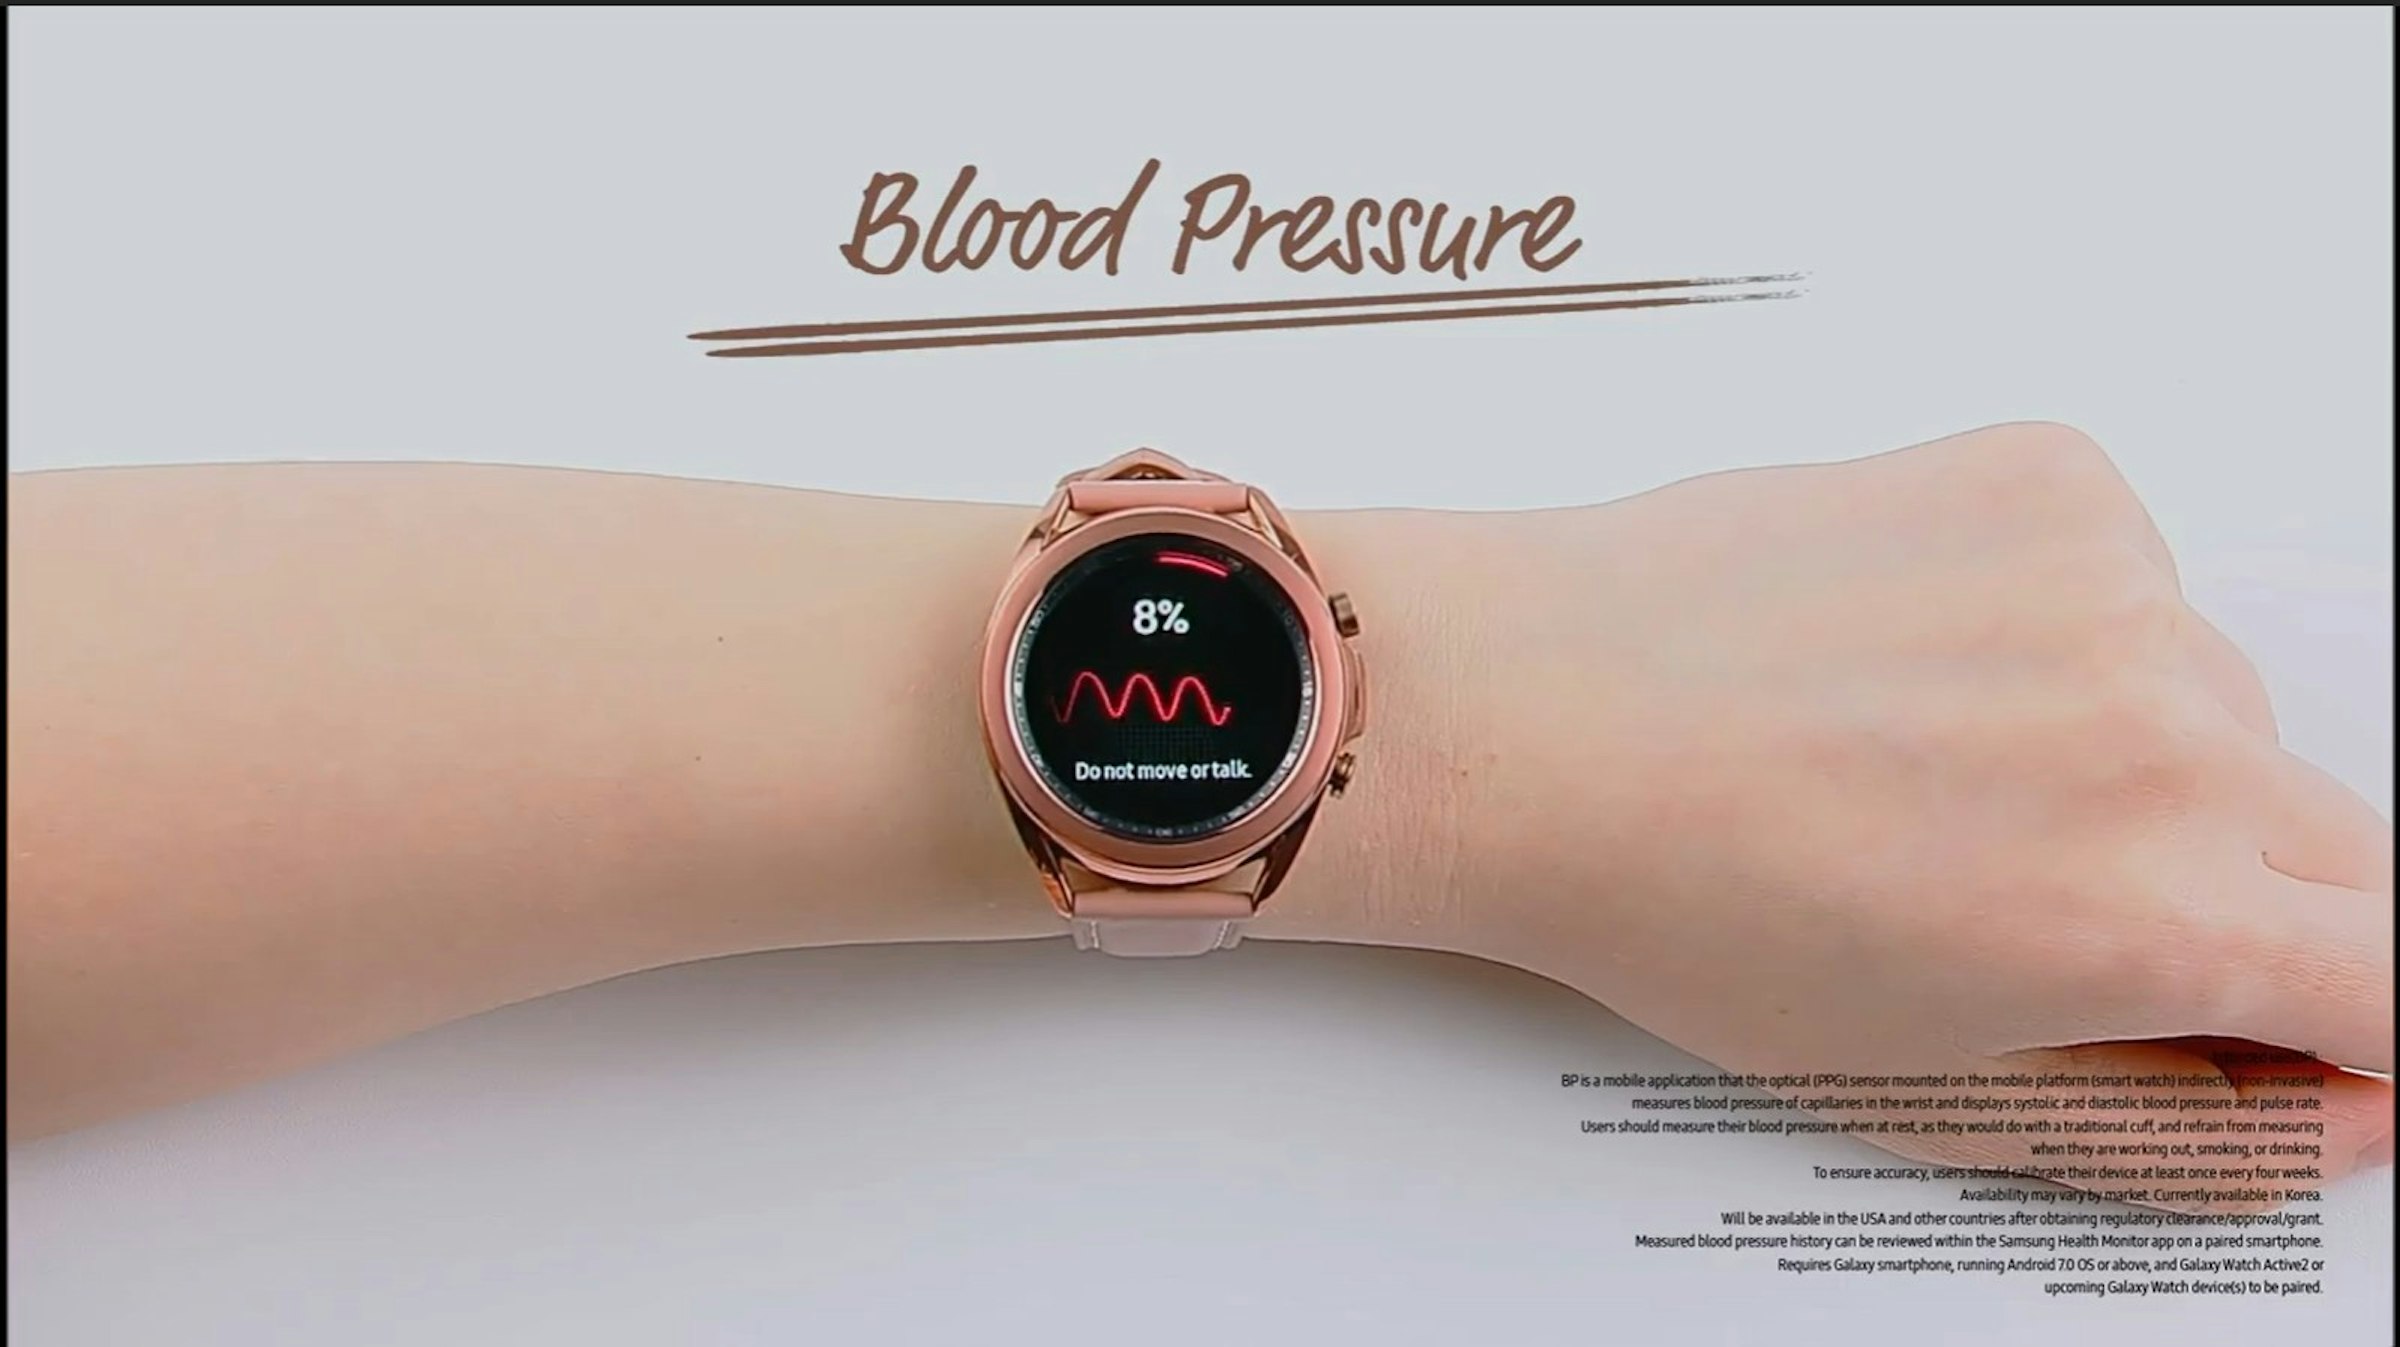 照片中提到了Blood Pressure、8%、Do not move or talk.，包含了布勒食品市场公司、第84届奥斯卡金像奖、产品设计、环、牌